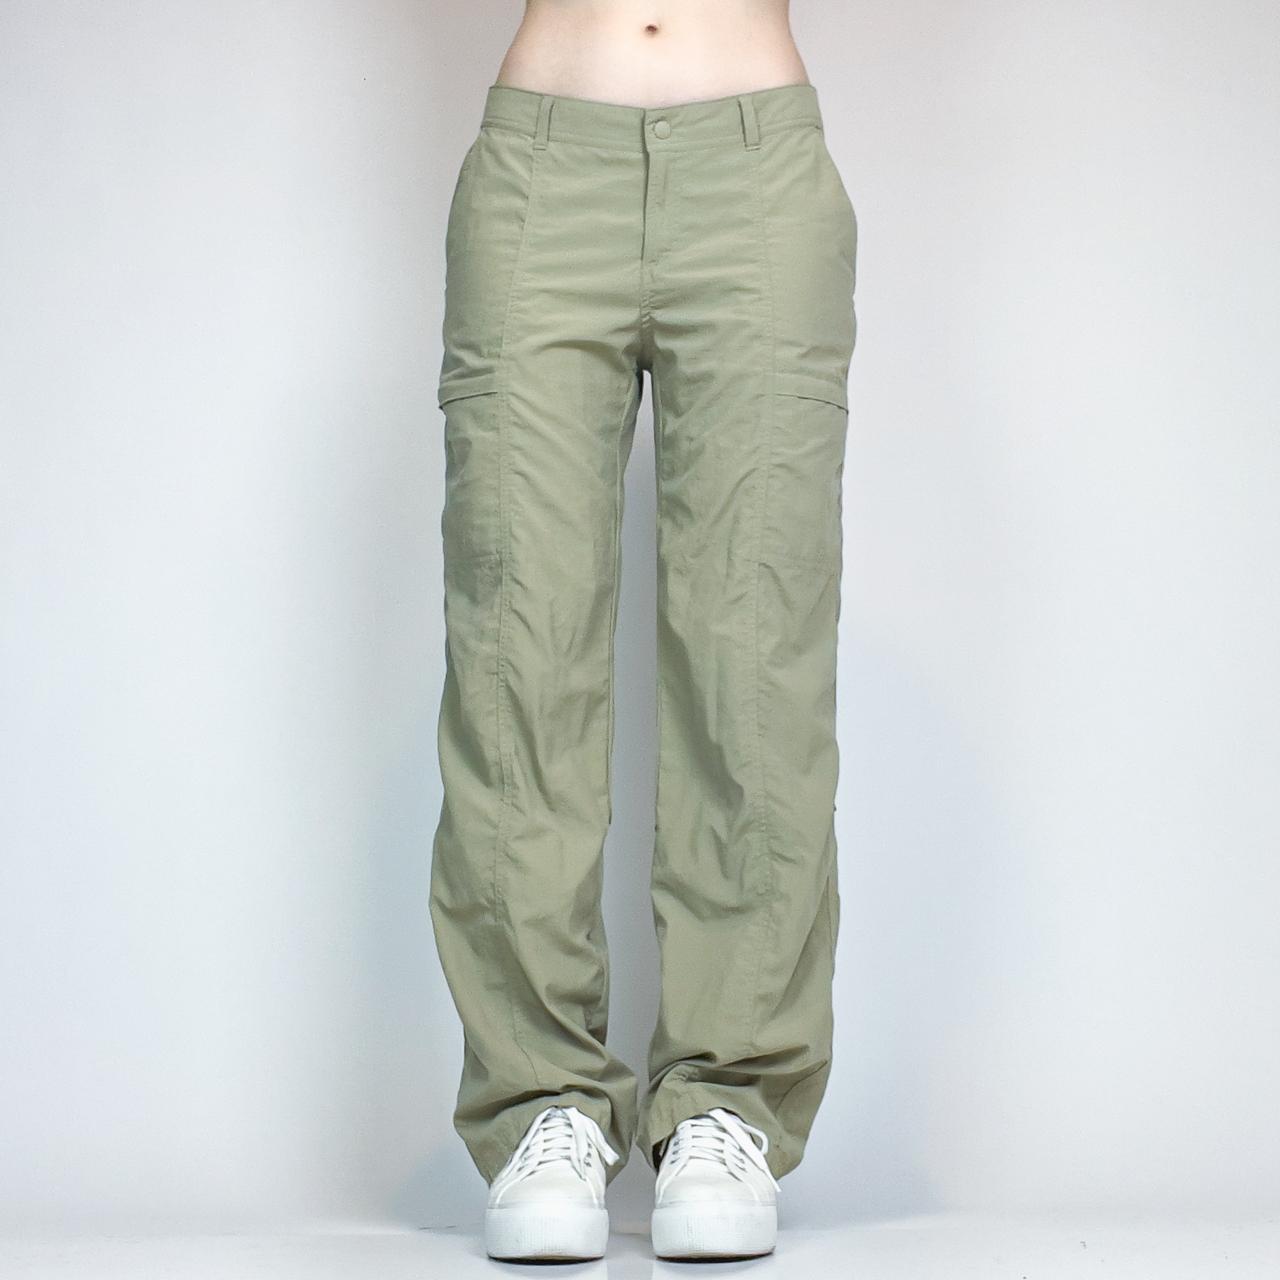 ExOfficio Women's Khaki and Tan Trousers (2)